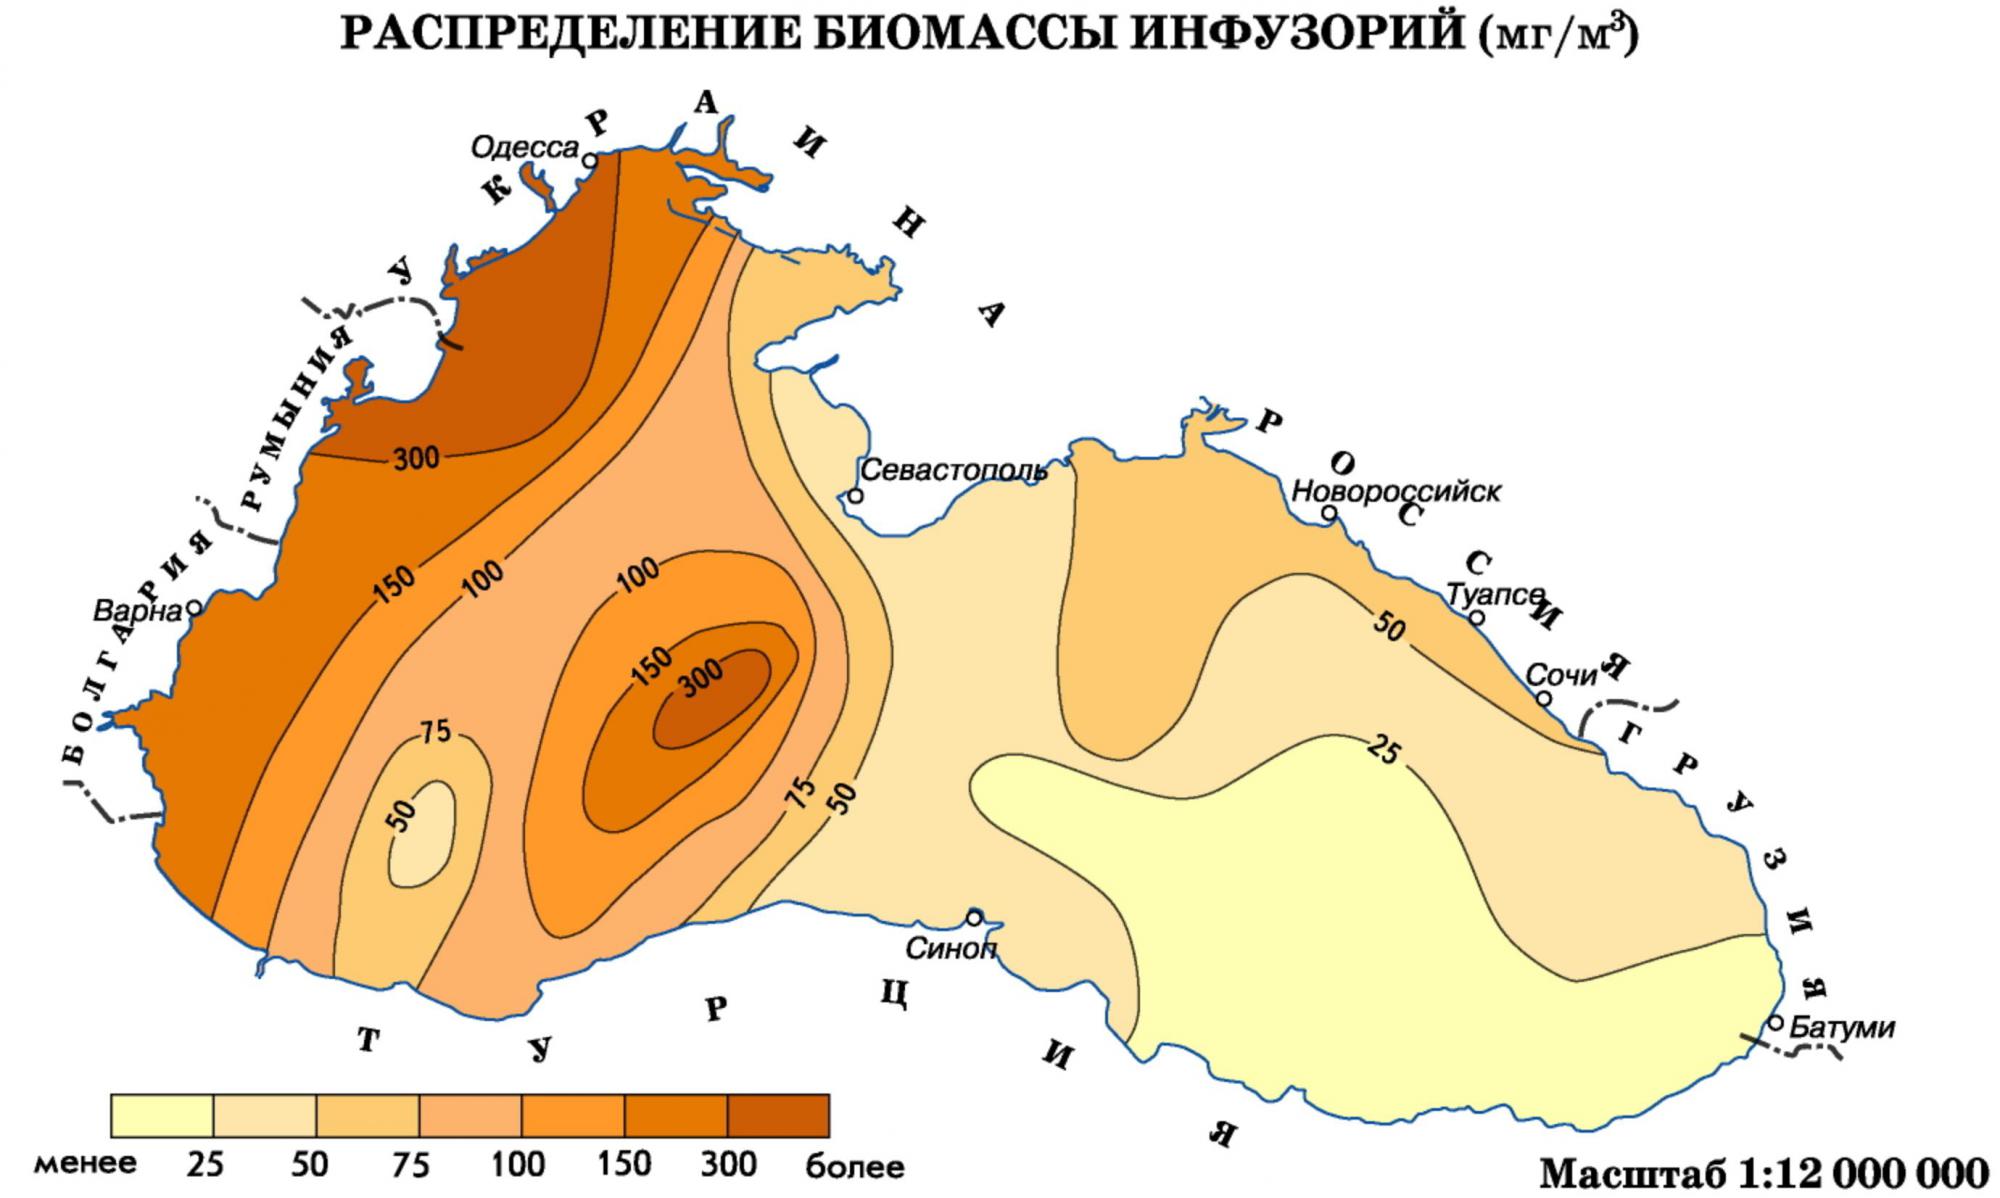 Температура черного моря сегодня новороссийск